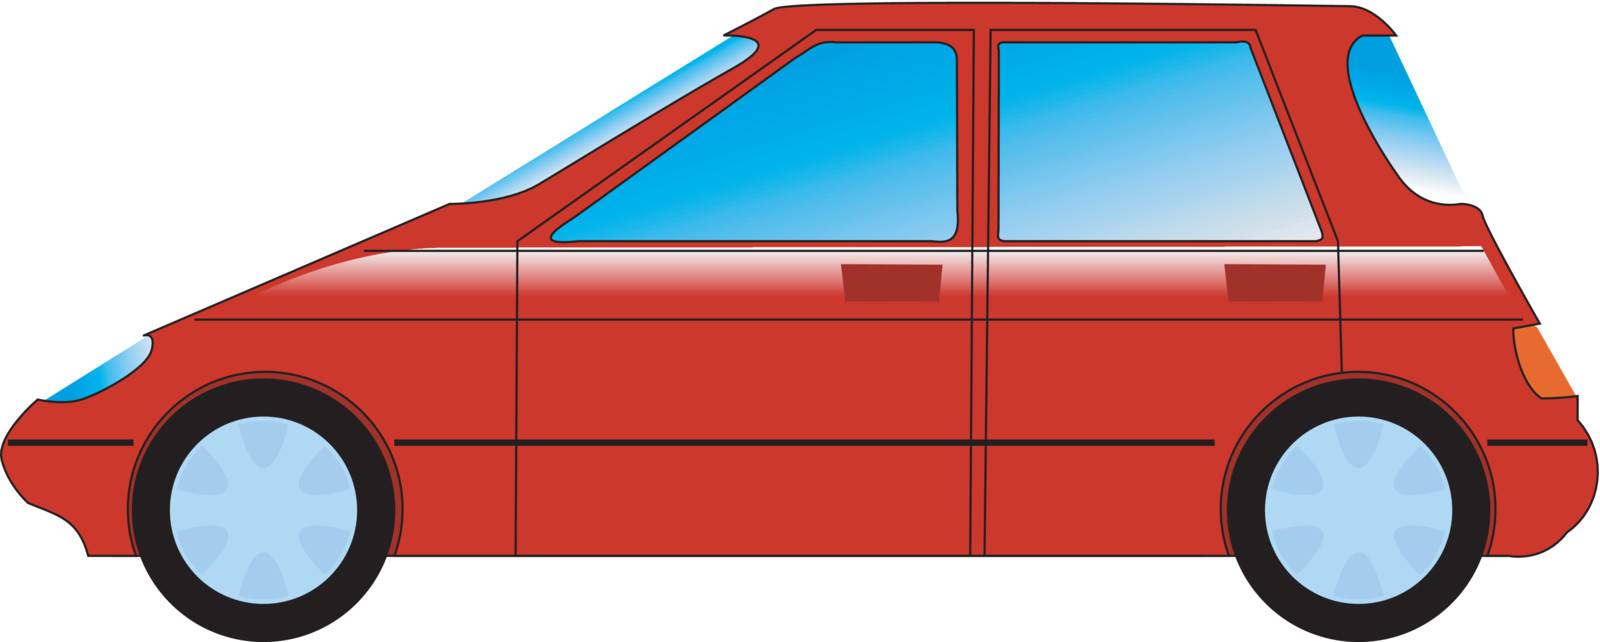 a cartoon stylish illustration of minivan